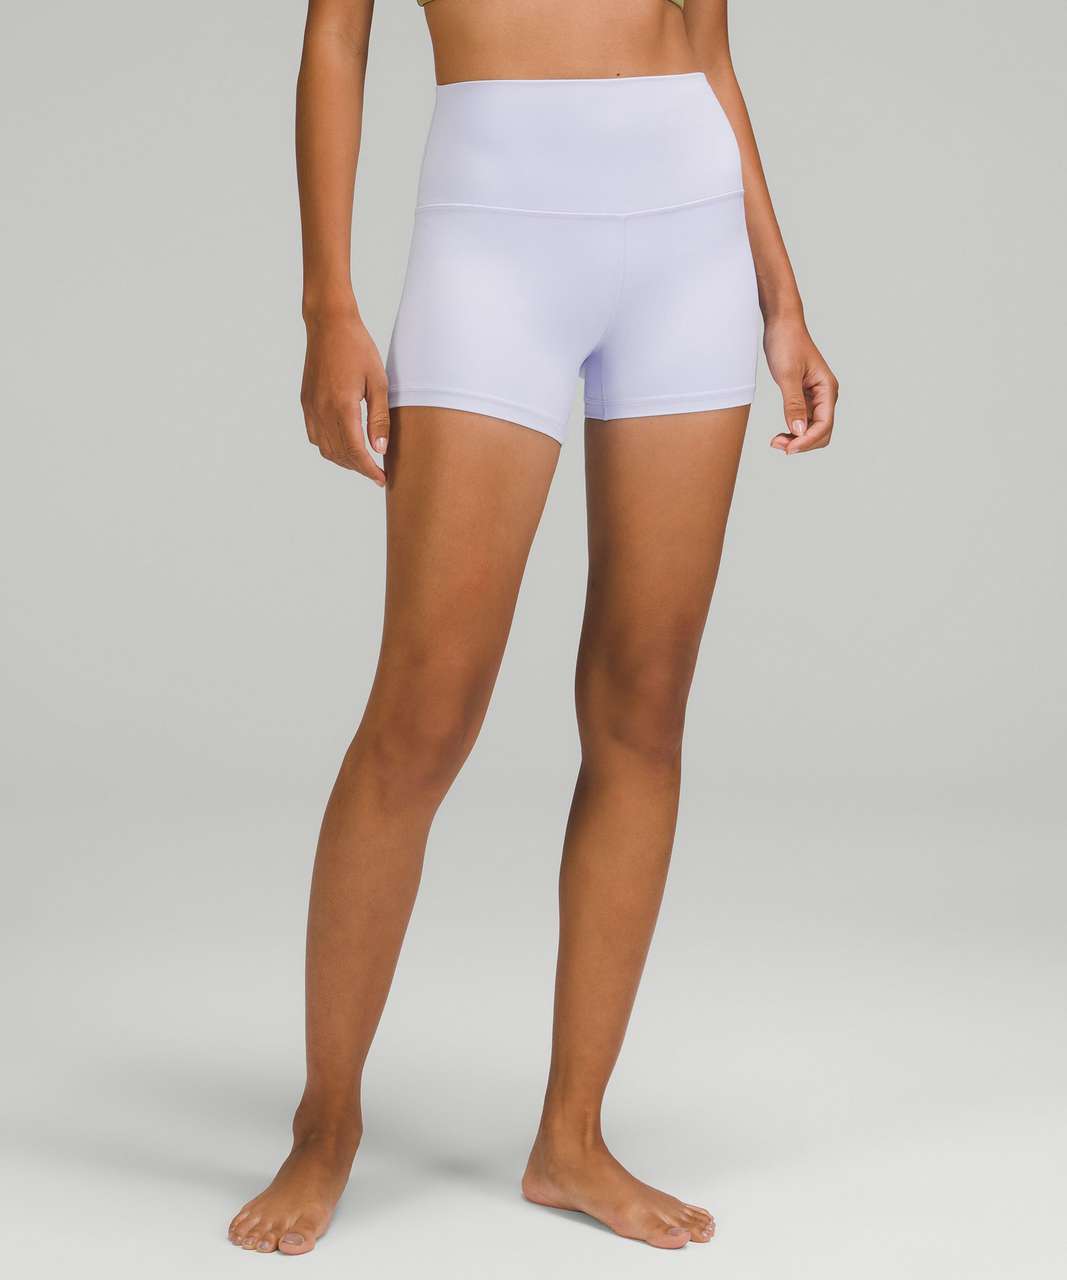 Align flowy shorts, say no more. ✨ #lululemonshorts #lululemon #lulule